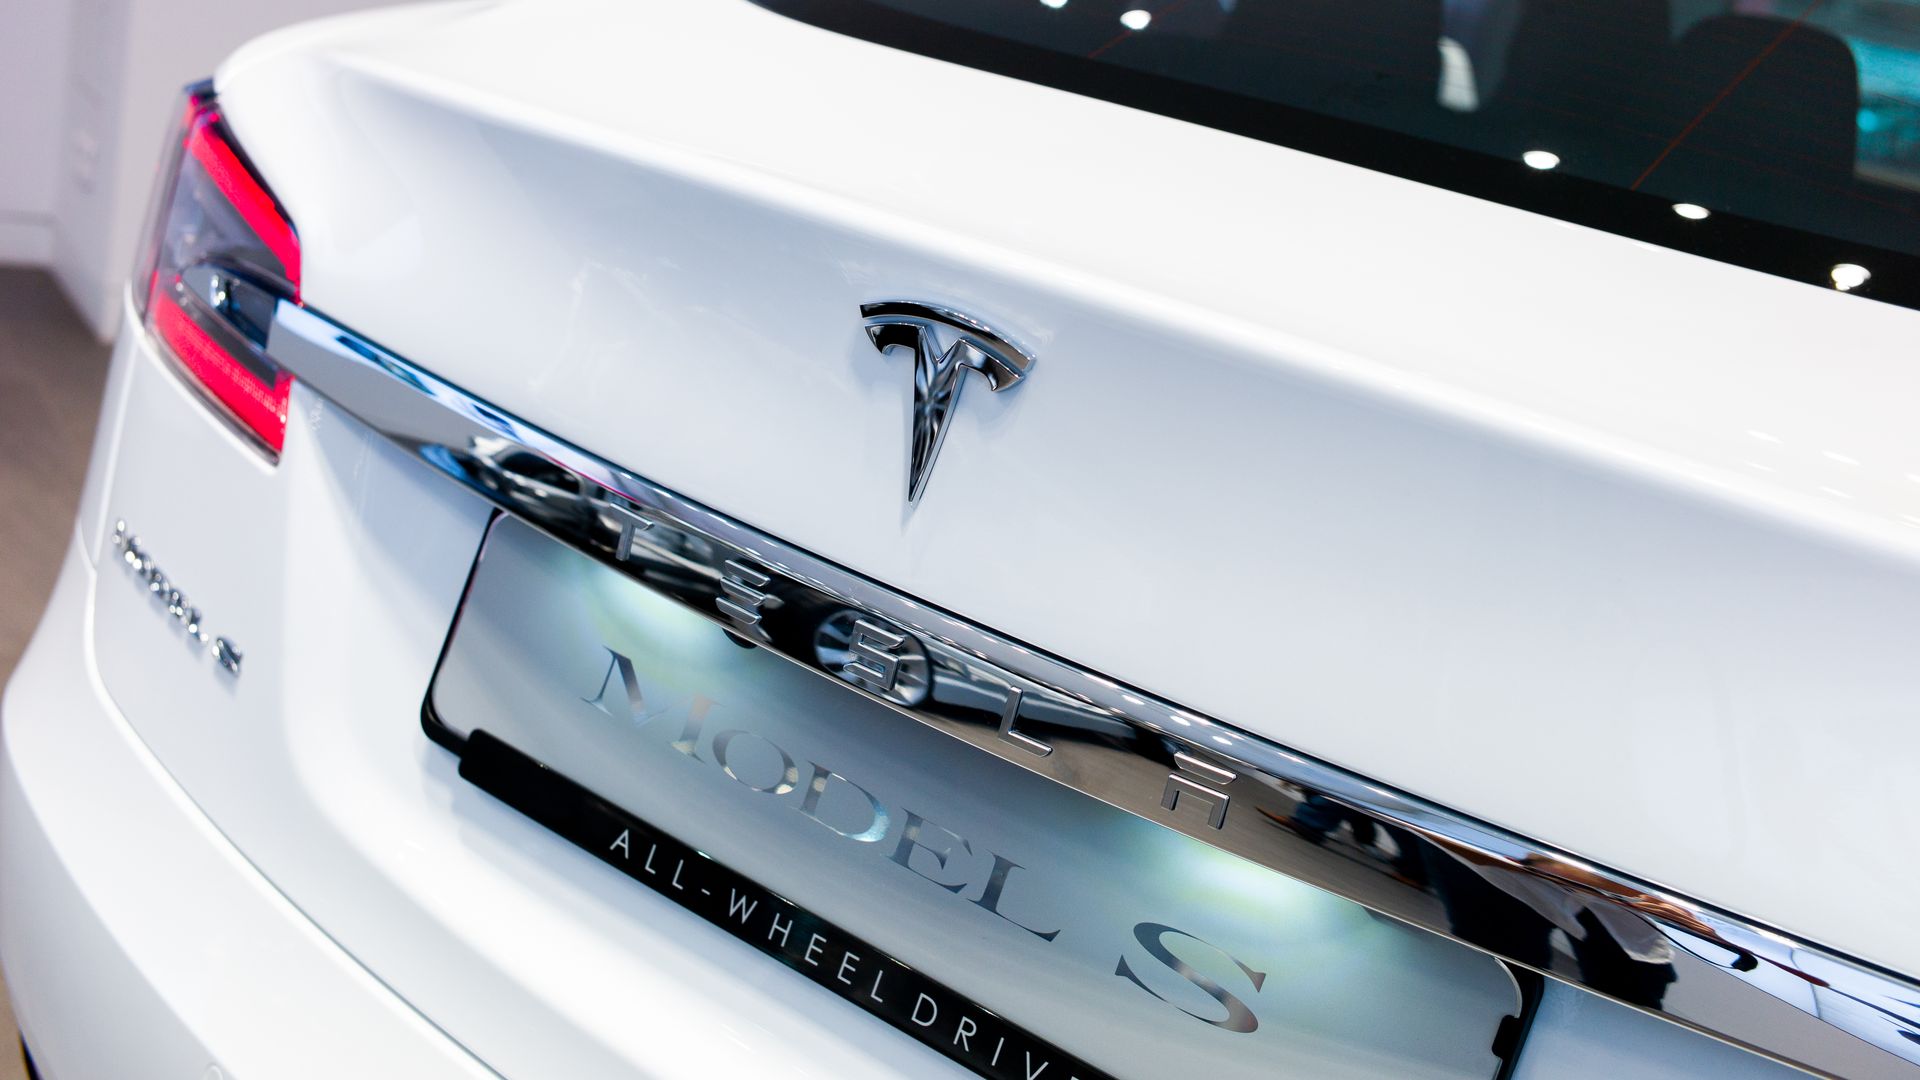 Image of rear of Tesla Model S